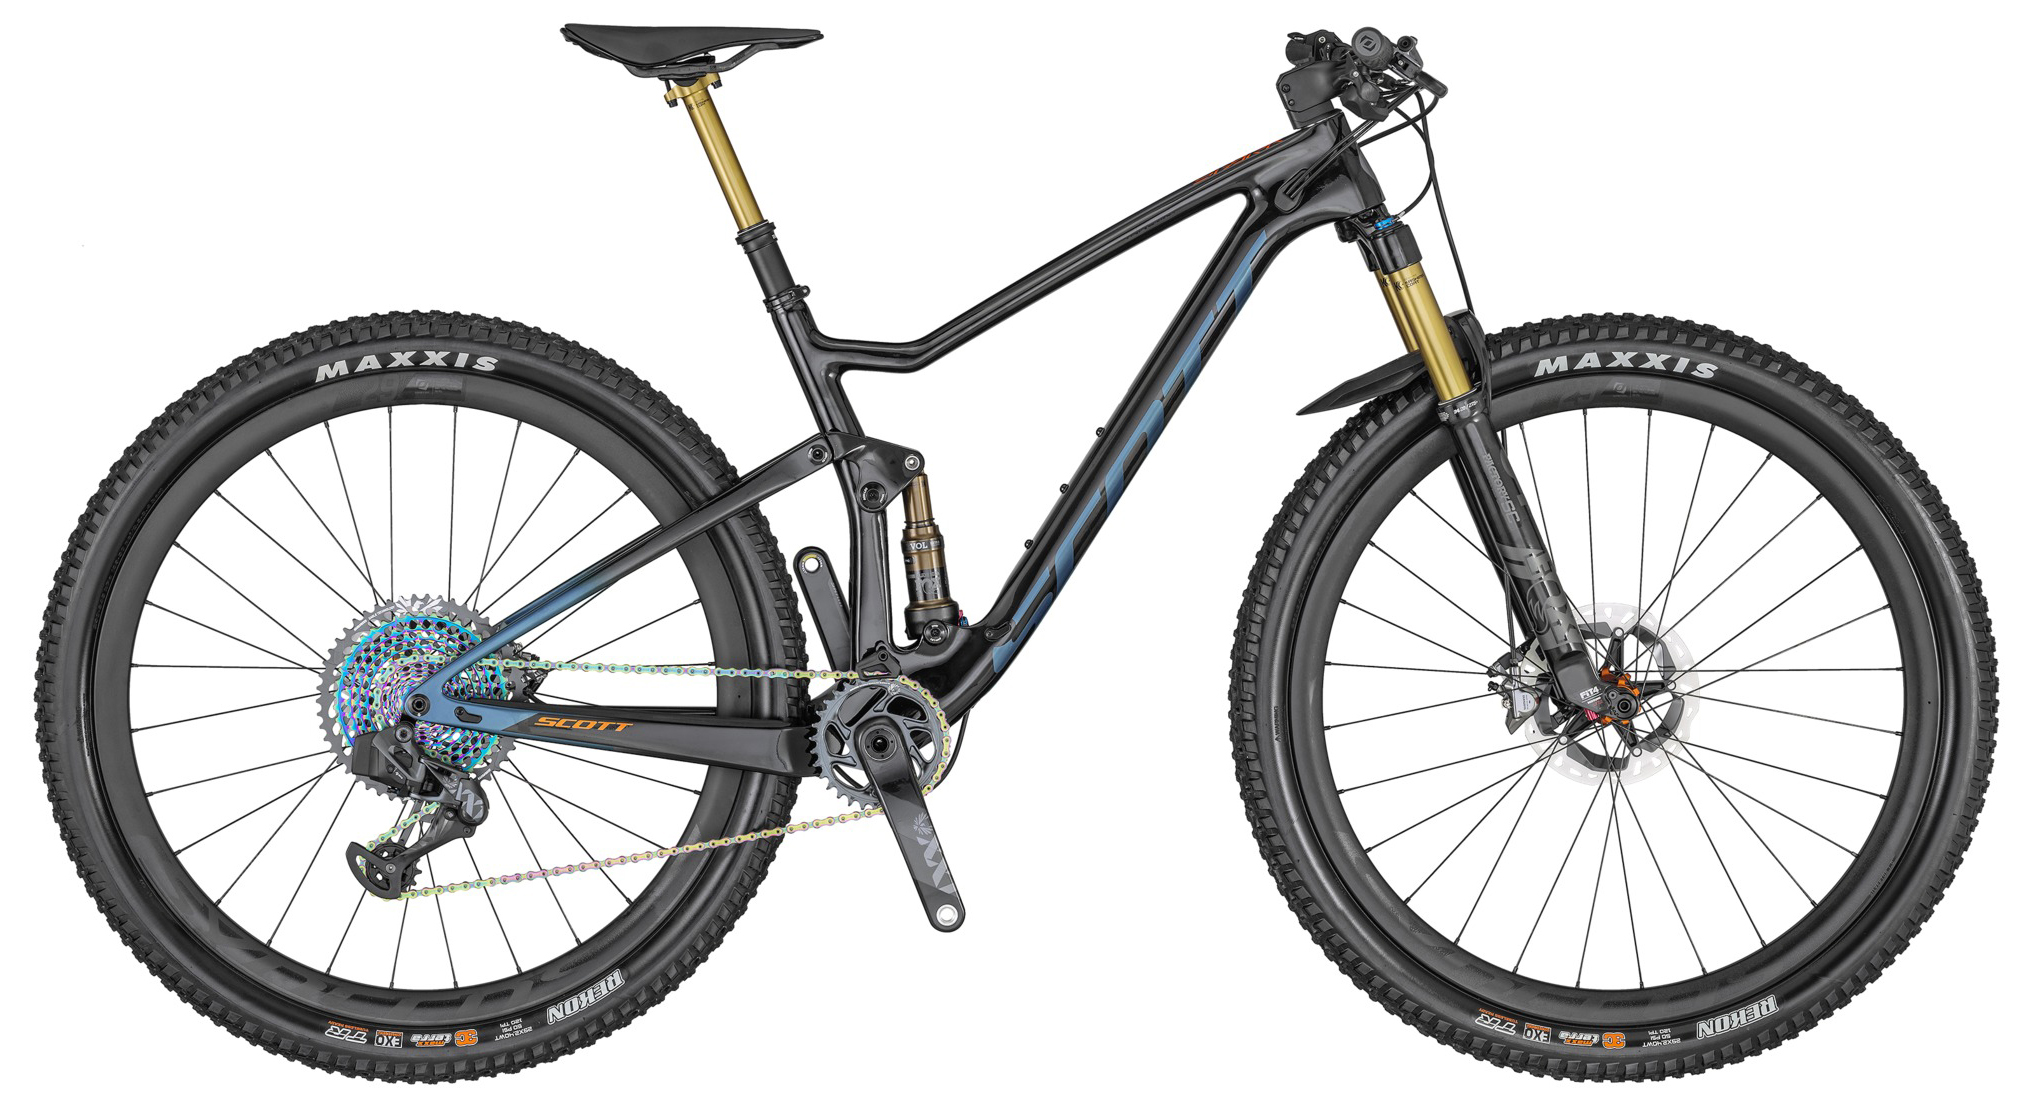  Отзывы о Двухподвесном велосипеде Scott Spark 900 Ultimate AXS 2020